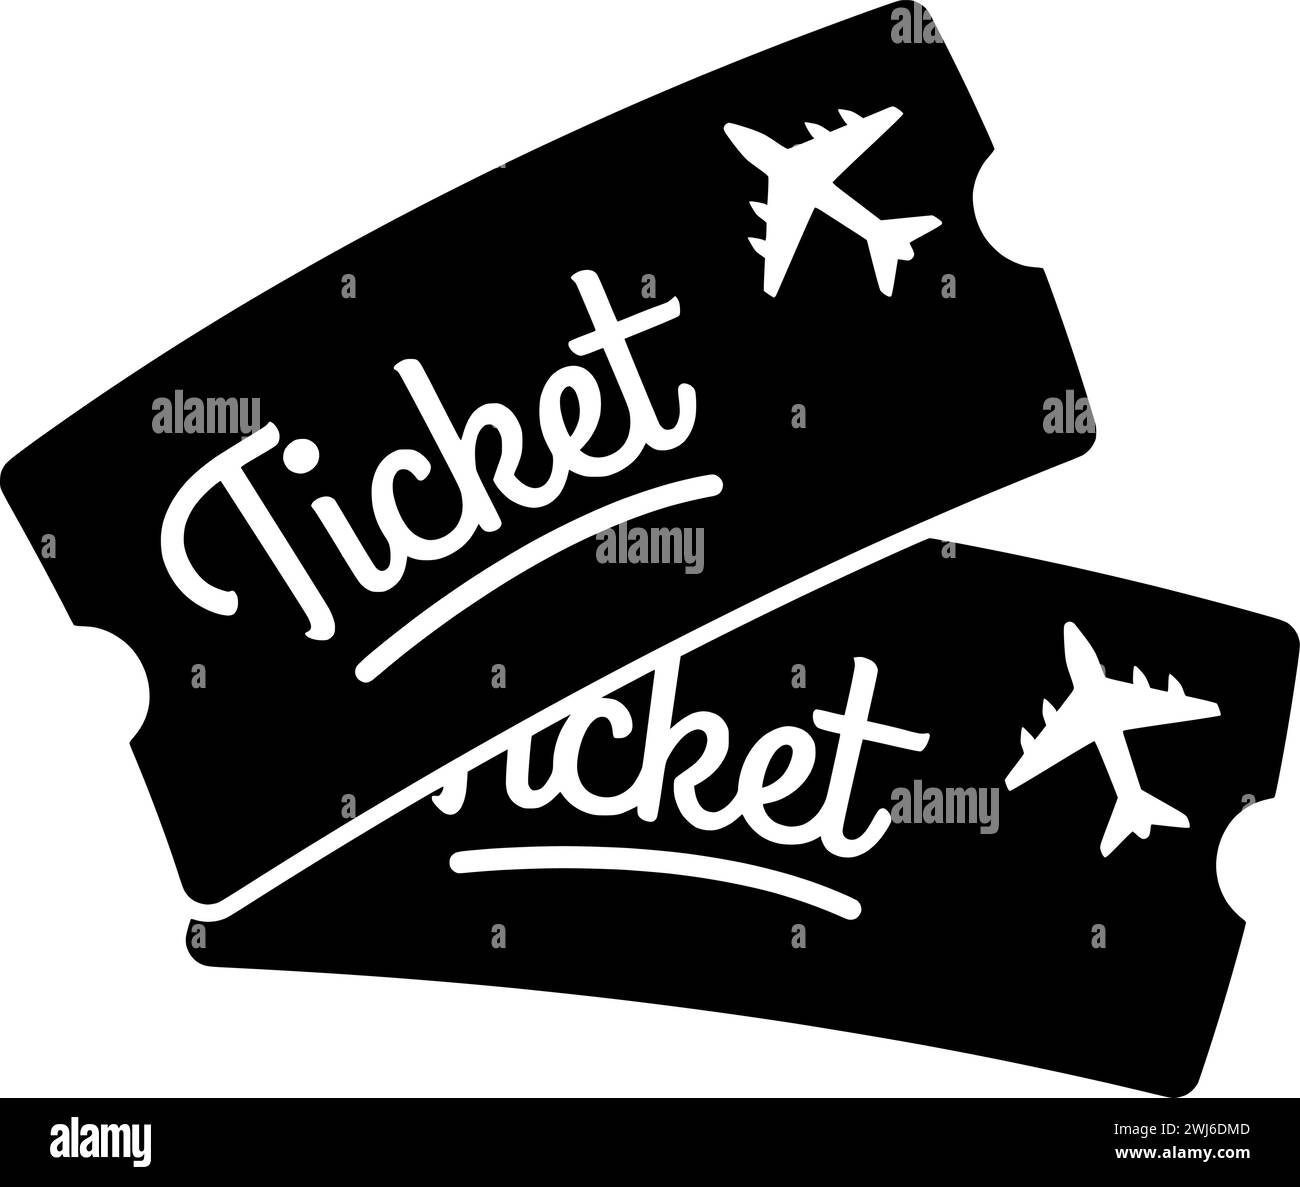 biglietto nero con silhouette o passaporto piatto immagine del logo di viaggio turismo per le vacanze con l'icona del viaggio e il mondo della forma turistica come vacanza da flig Illustrazione Vettoriale